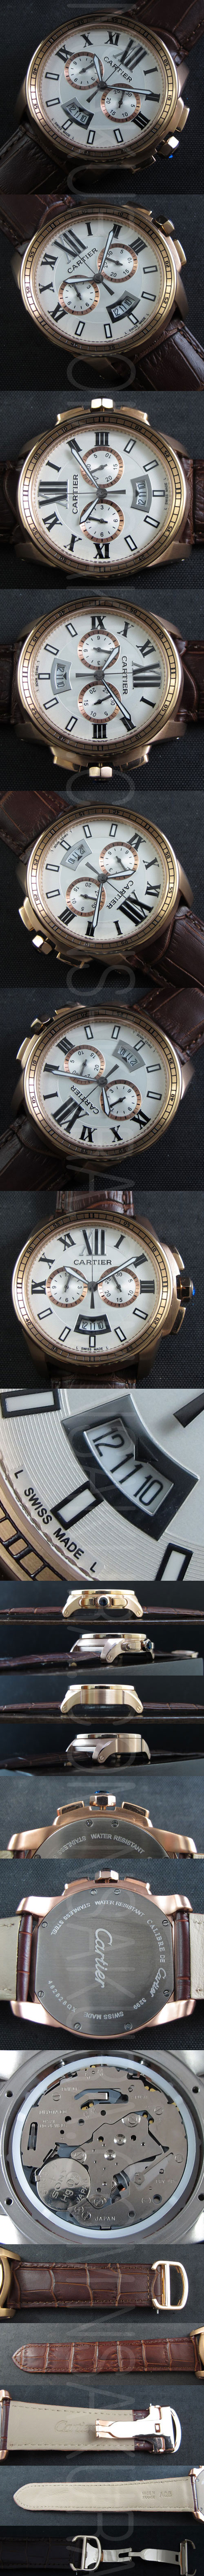 カルティエ腕時計の説明